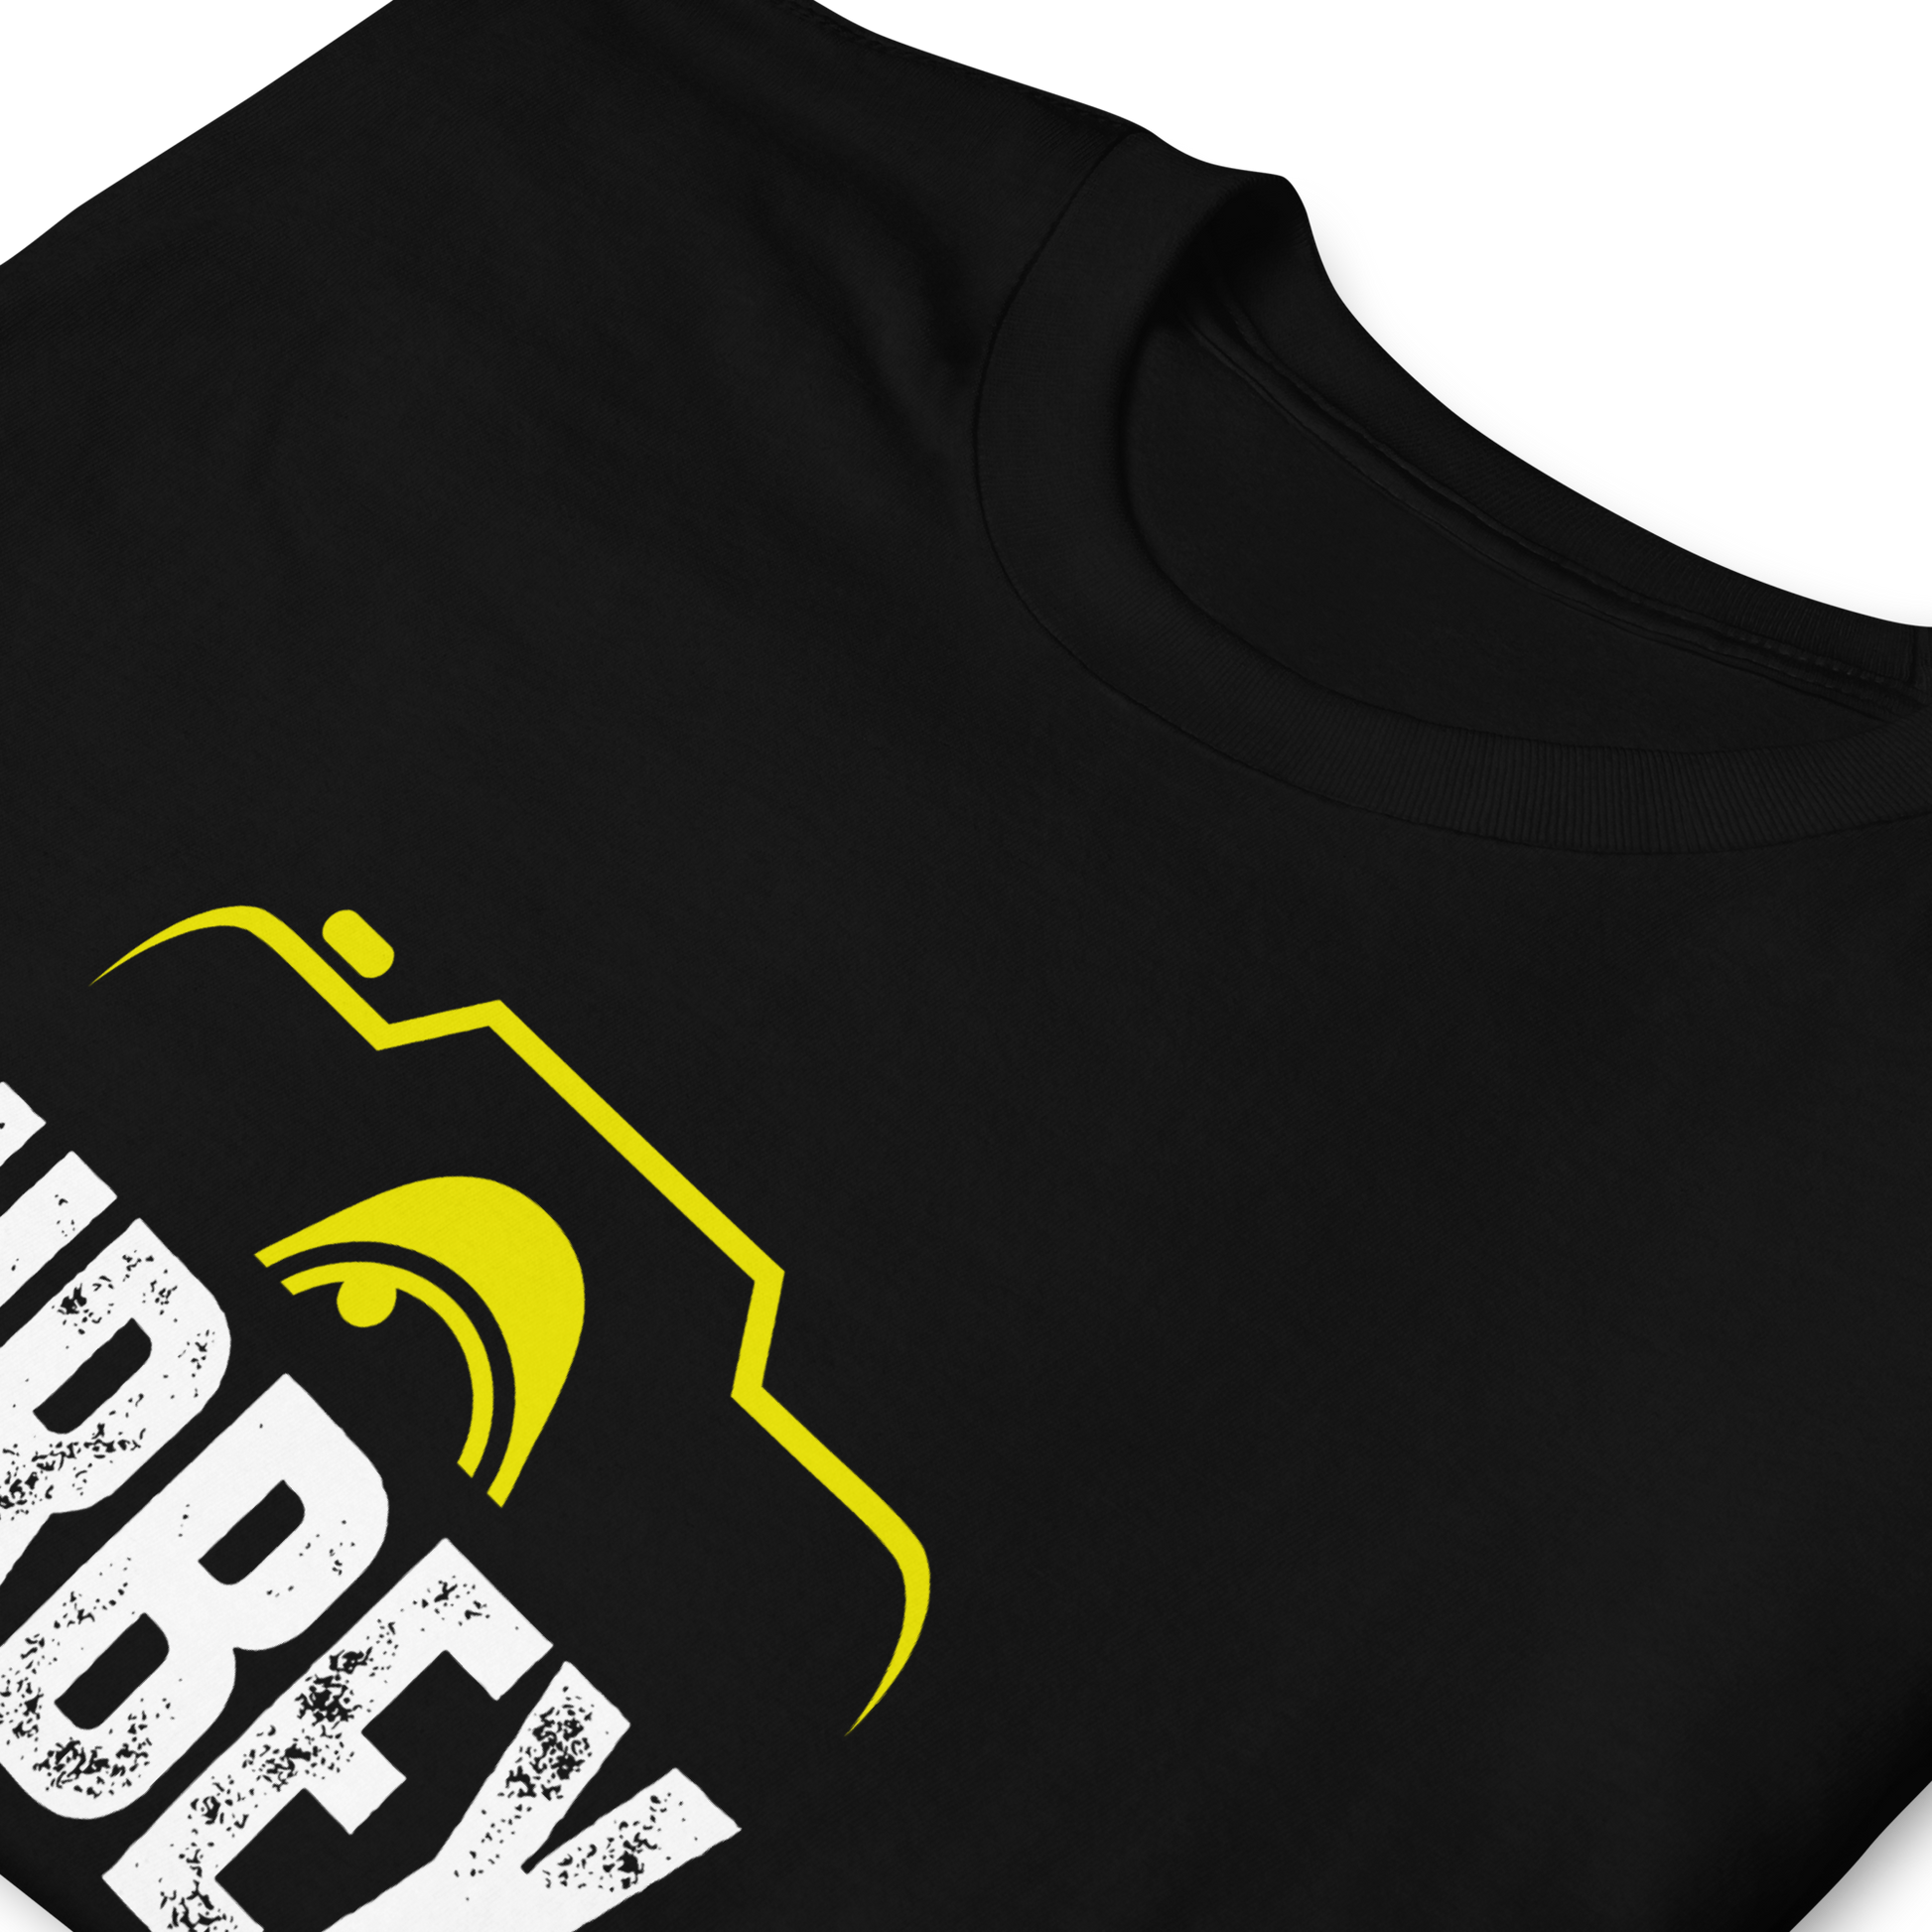 Brisbane Urbex Black and Yellow T-Shirt Unisex